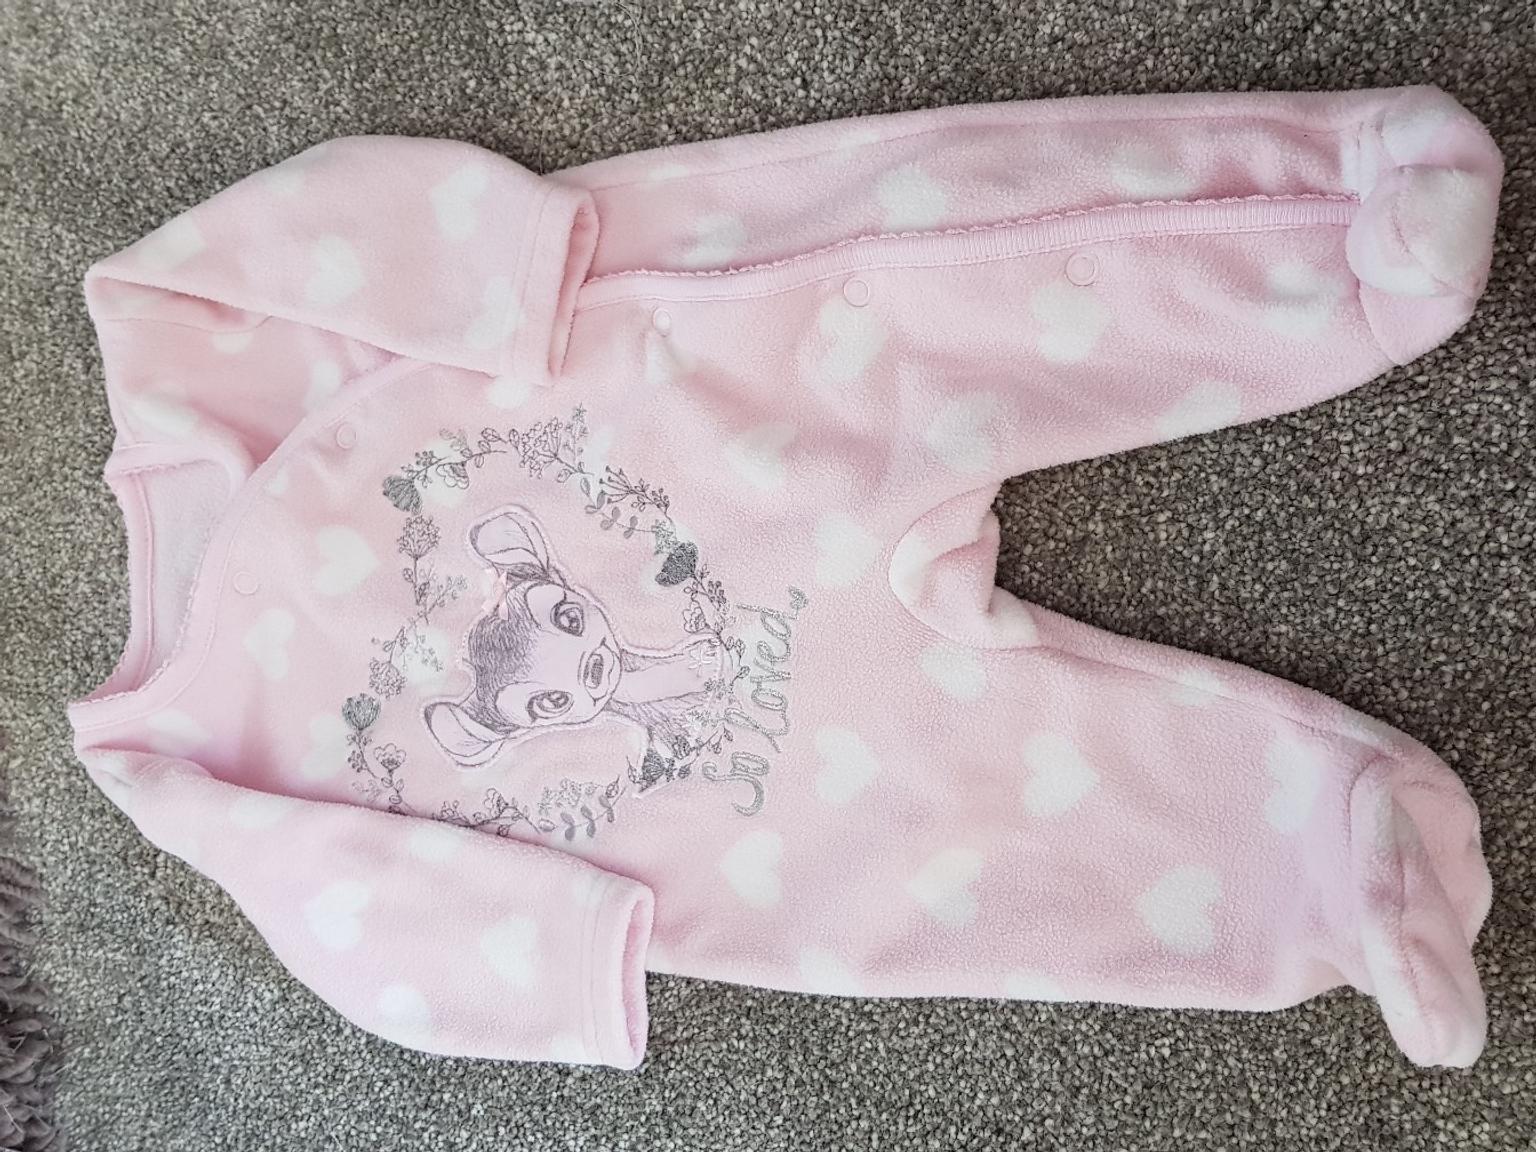 baby girl sleepsuits asda